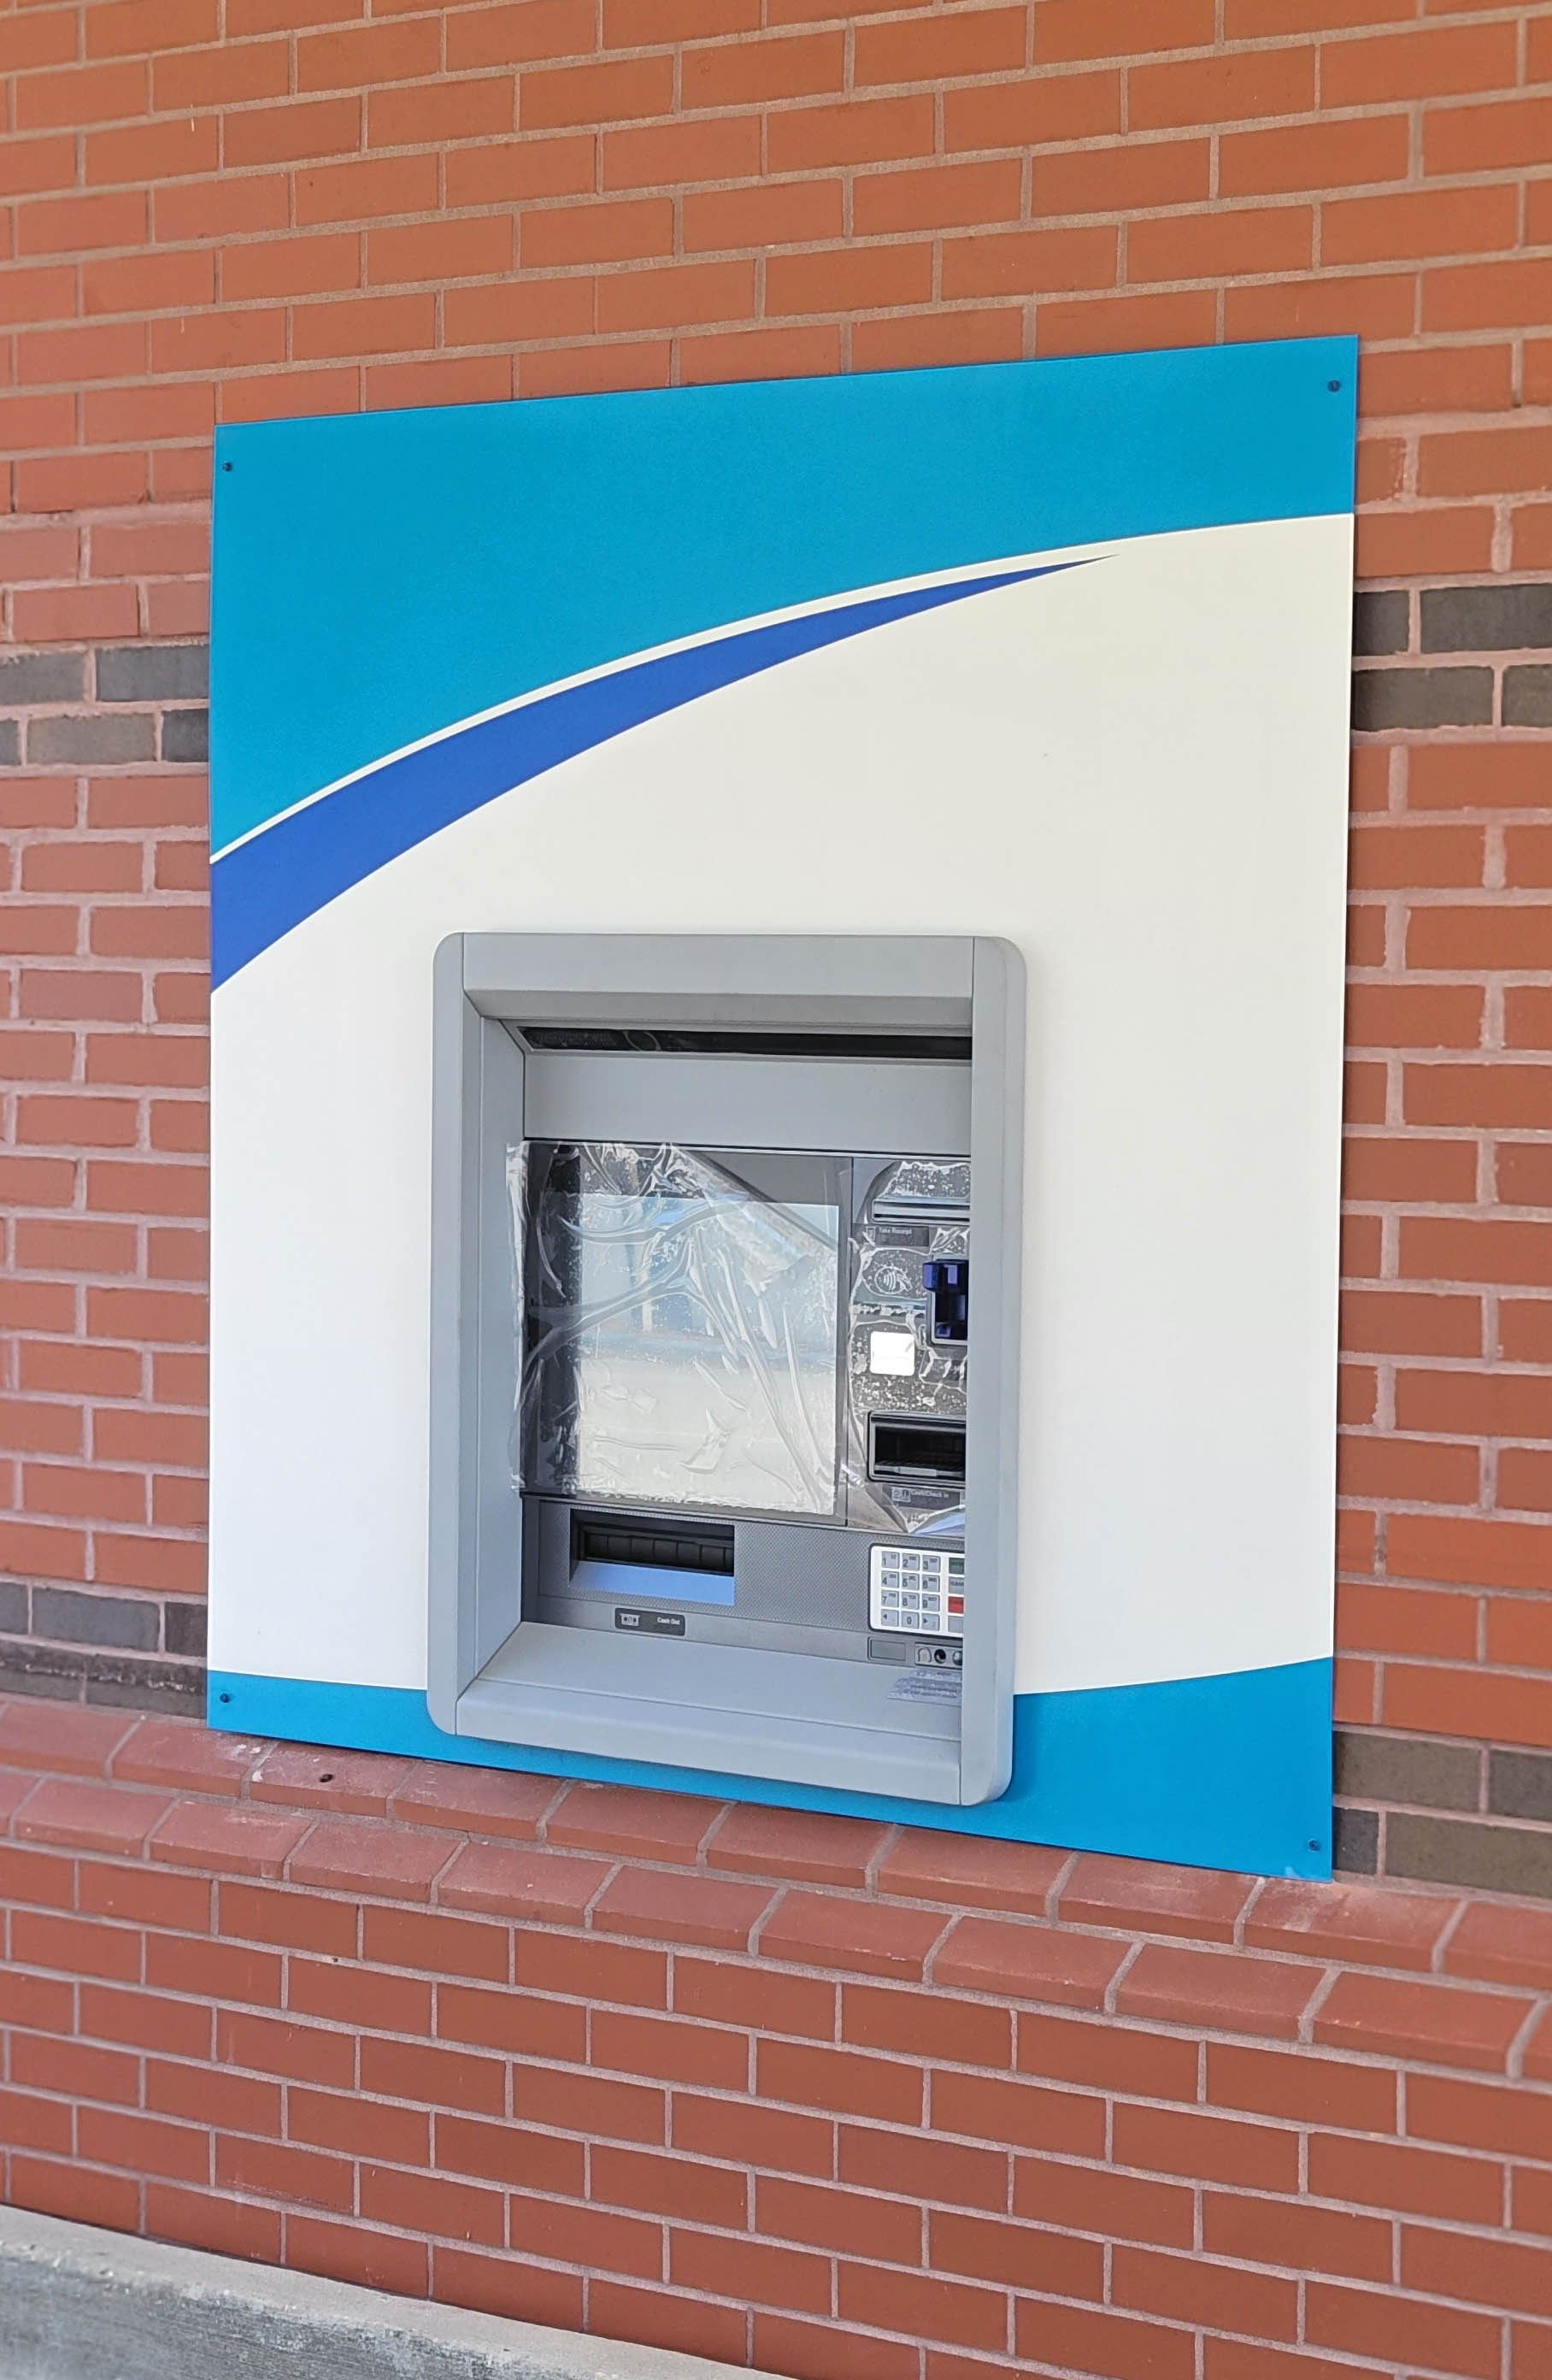 ATM Remodel